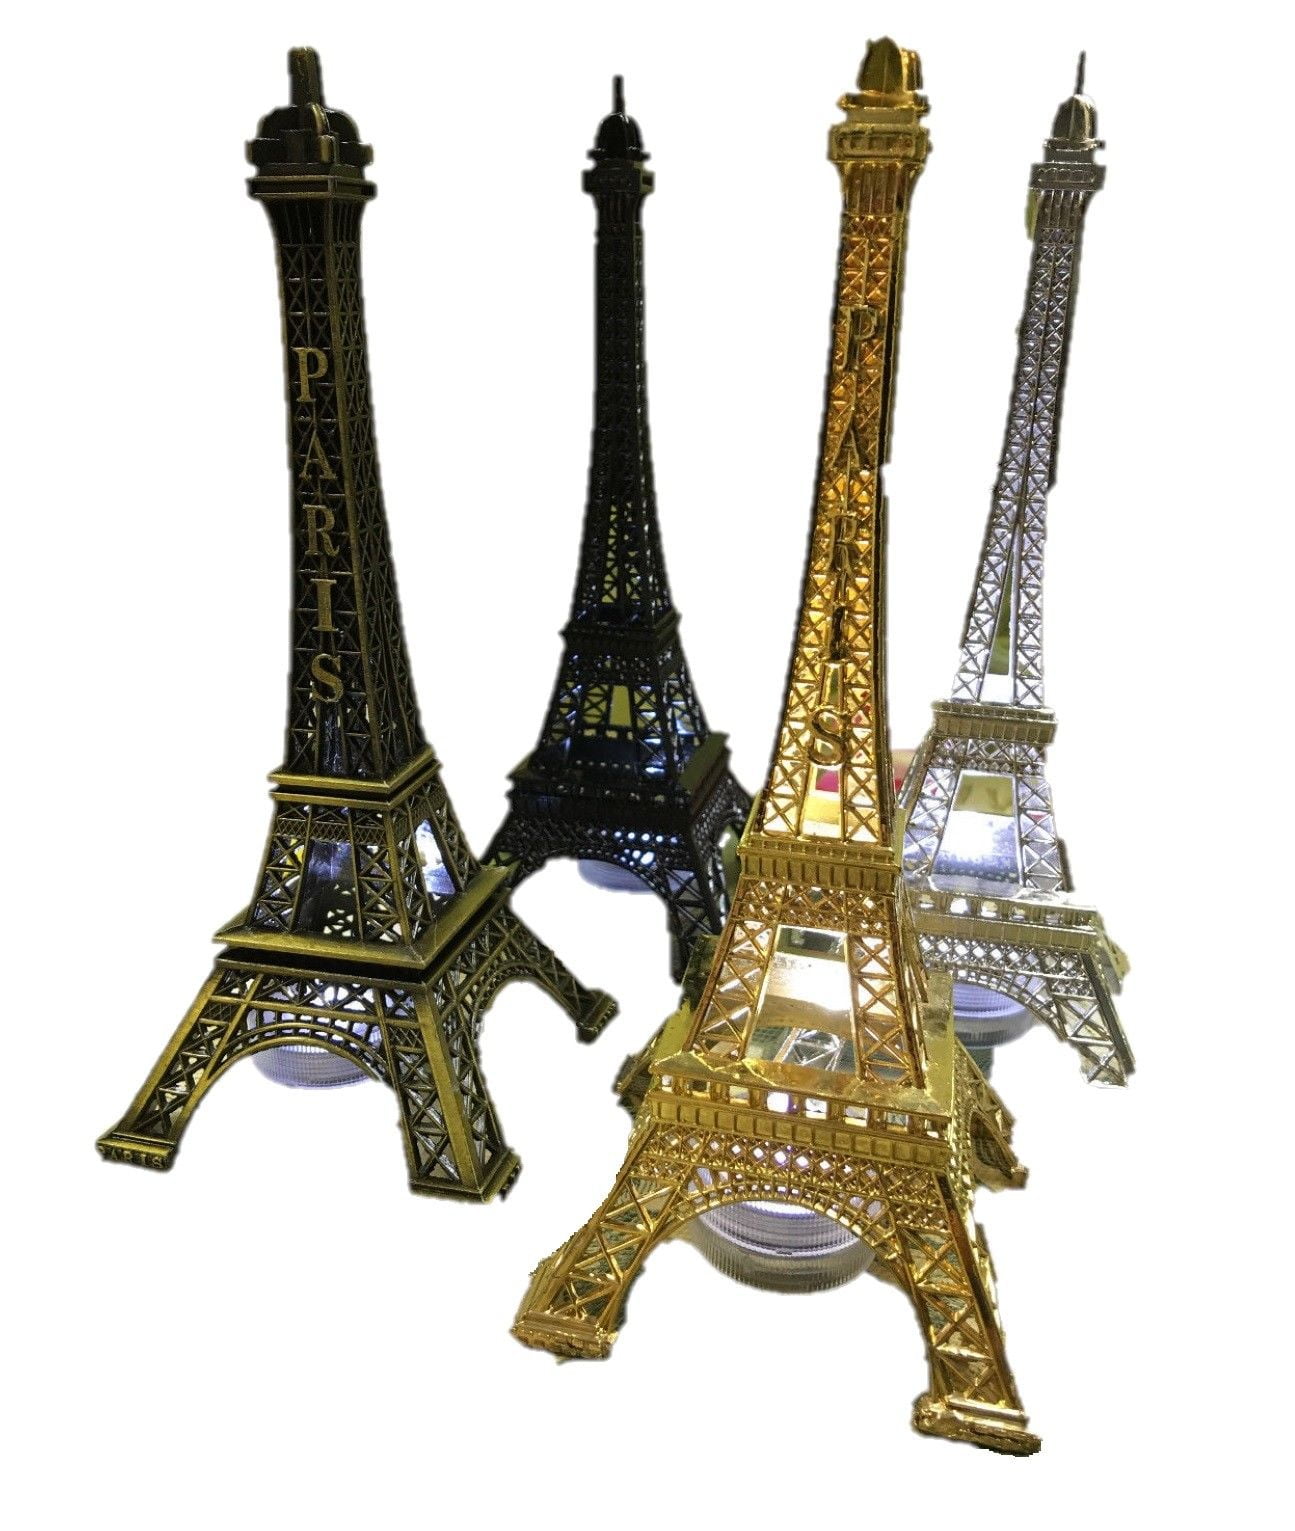 Paris Eiffel Tower 8-60cm high Statue Souvenir from Online Gift Store HOT golden 